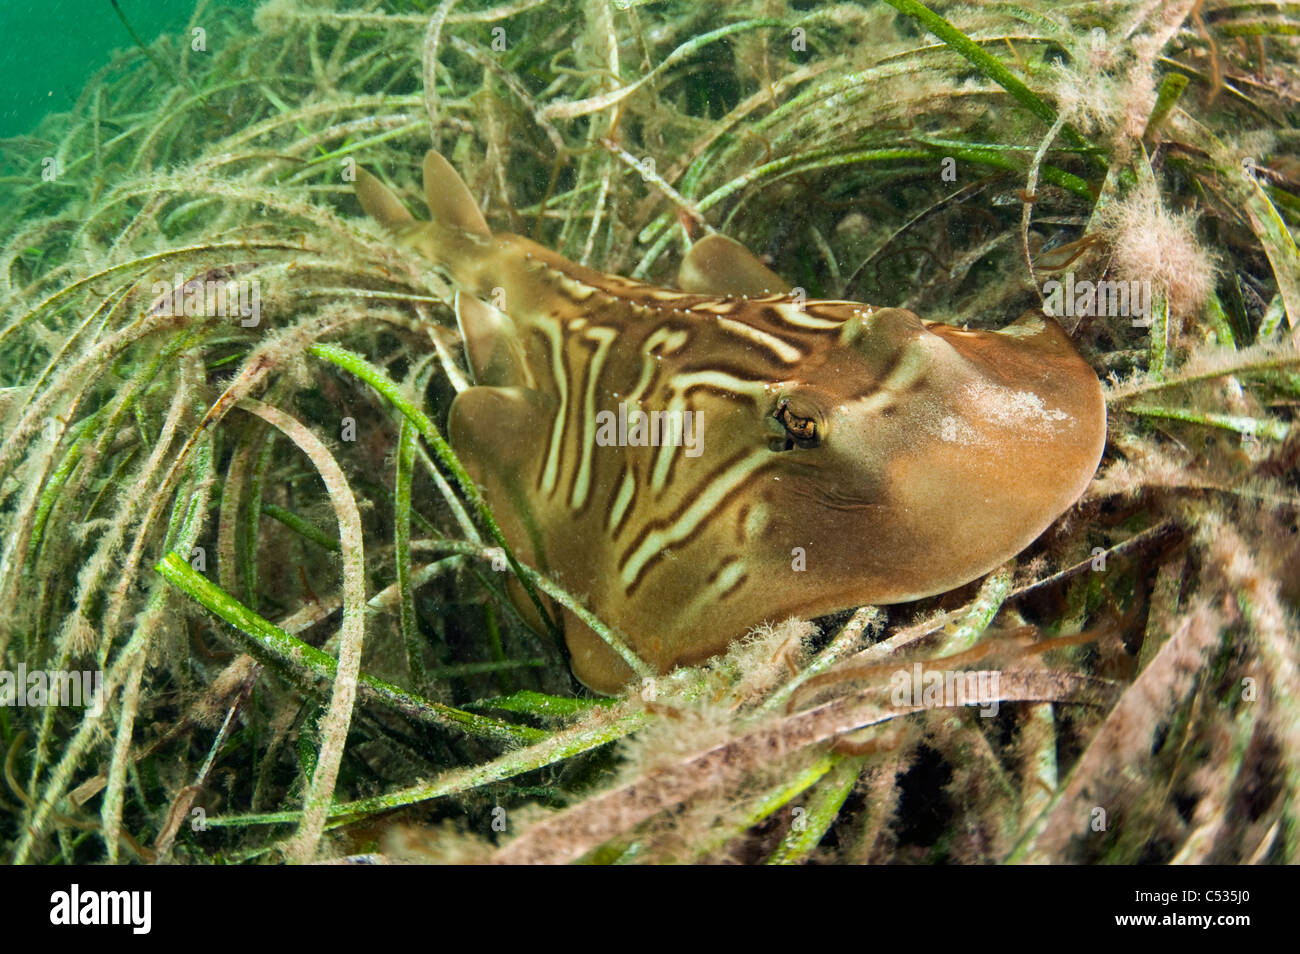 Un Sur de Fiddler Ray (Trygonorrhina fasciata) descansa sobre un lecho de hierba de mar en Edithburgh, Australia del Sur. Foto de stock